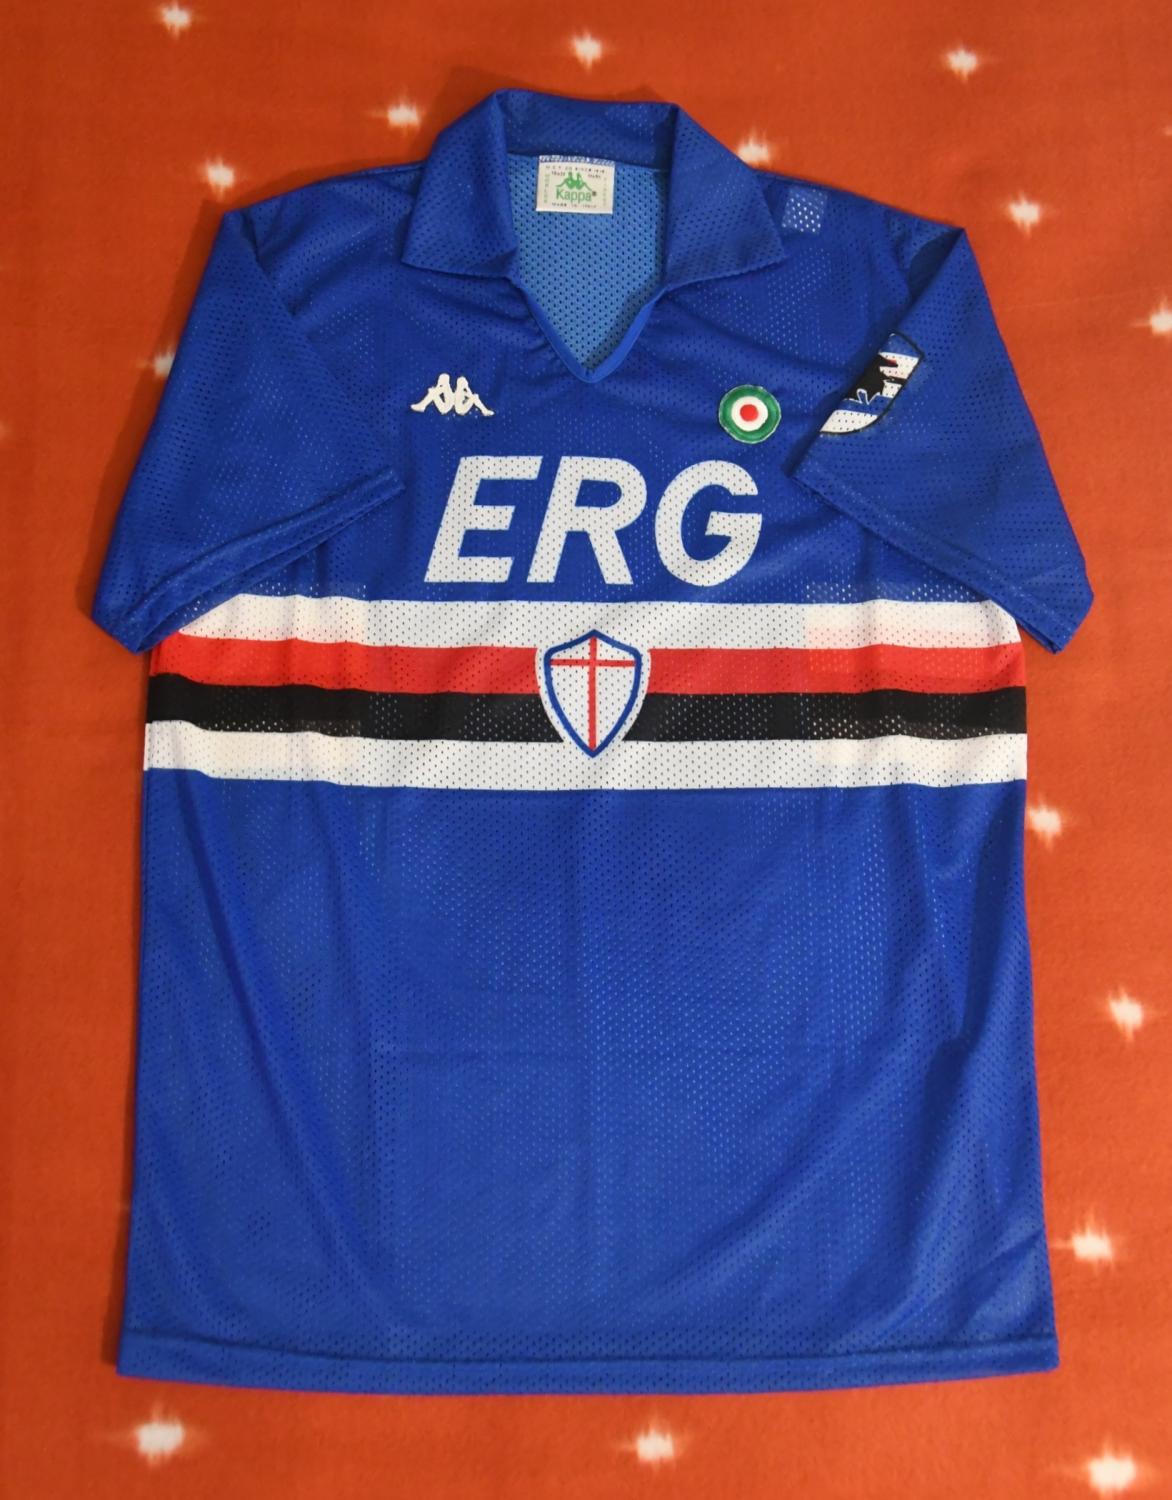 maillot de uc sampdoria domicile 1989-1990 rétro